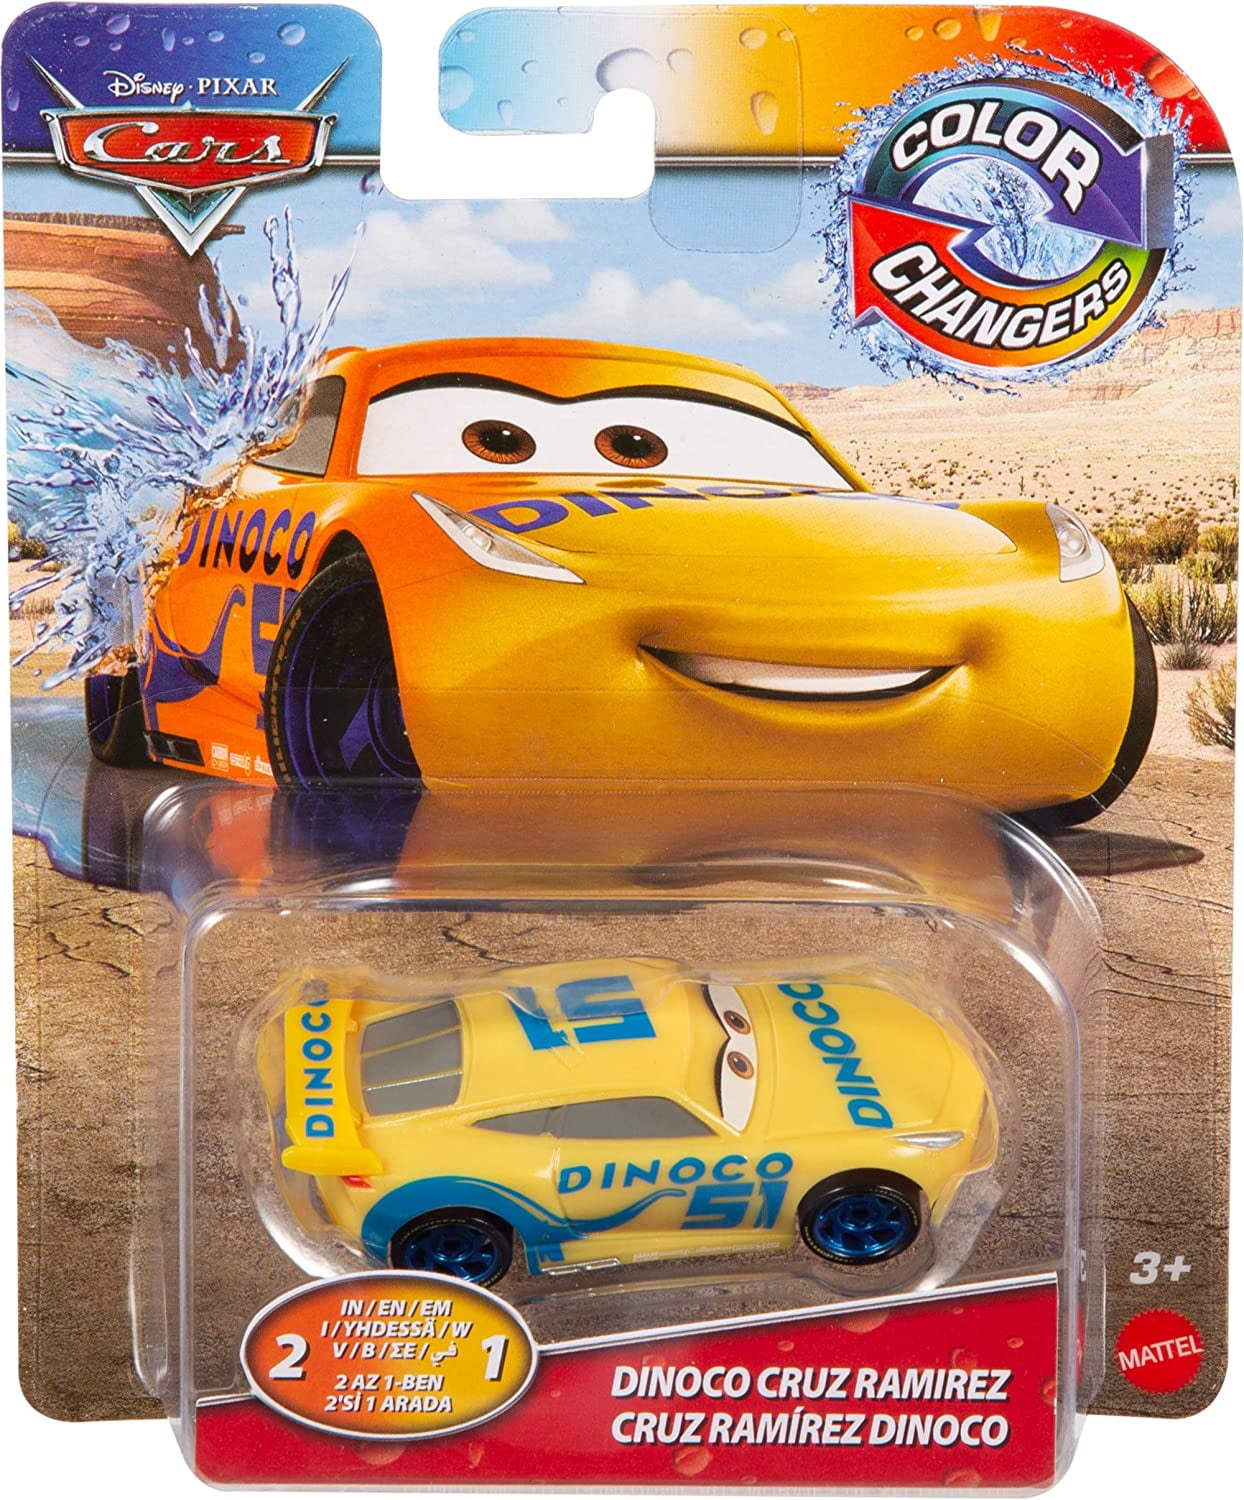 Vrouw Afwijking Glad Disney and Pixar Cars Color Changers Assortment, Transforming Paint Job  Vehicles - Walmart.com